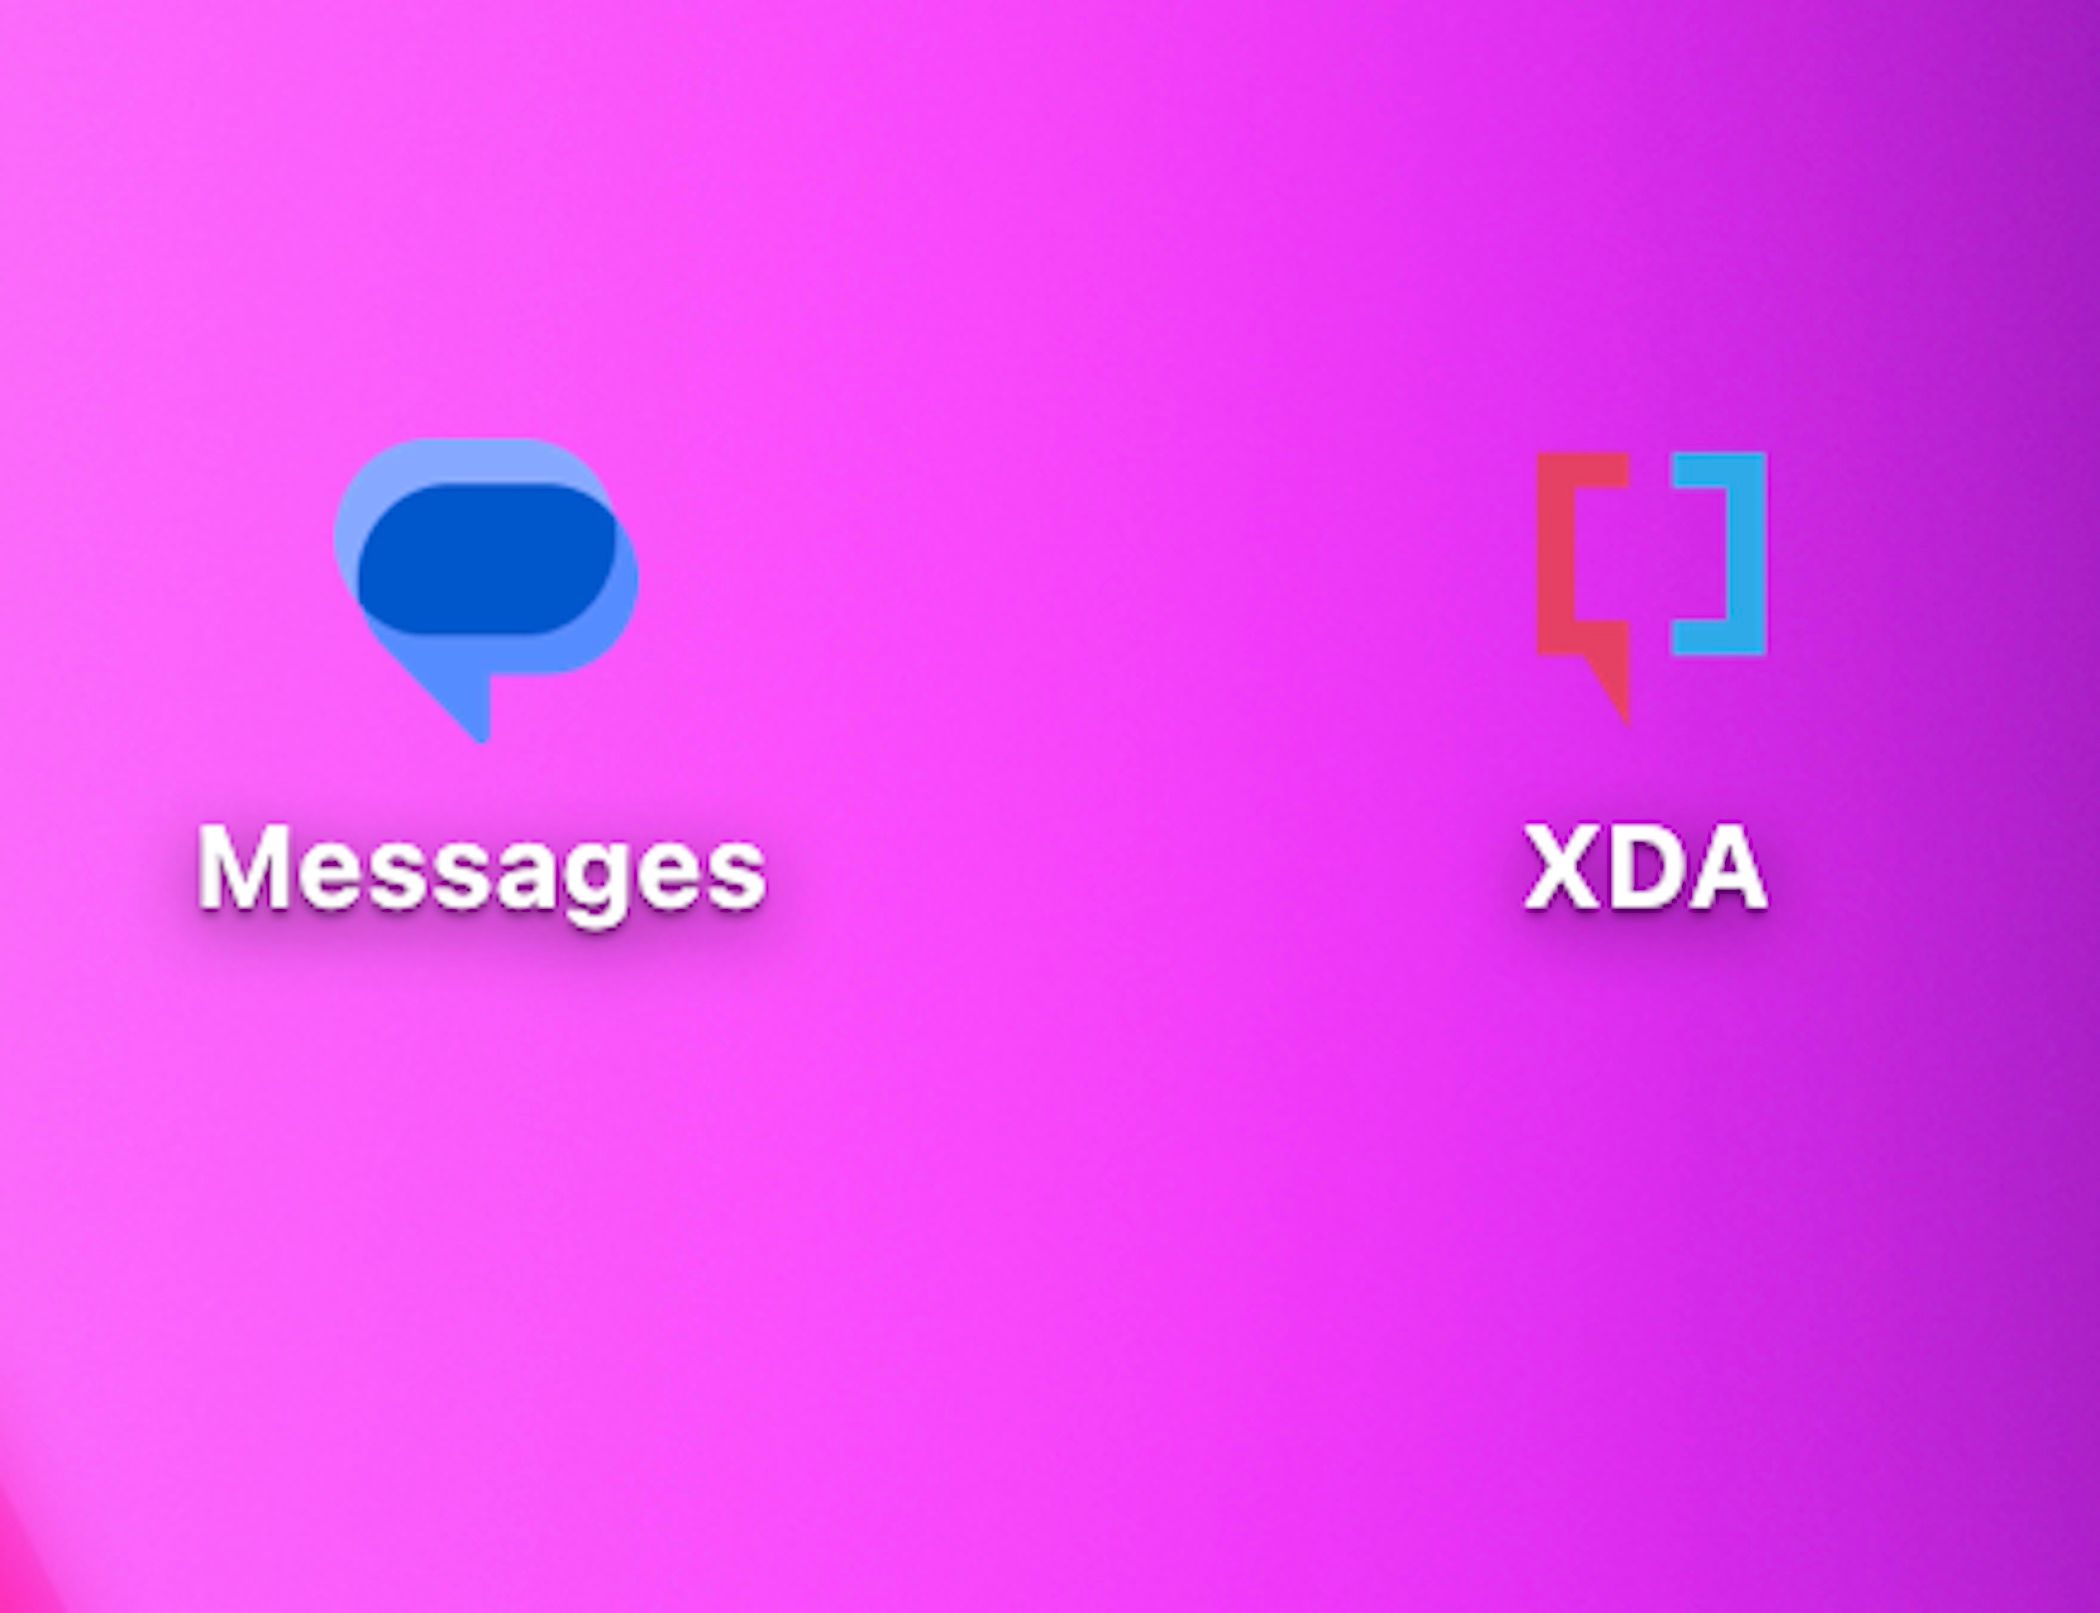 Una imagen que muestra los íconos de la aplicación de mensajes de XDA y Google uno al lado del otro.